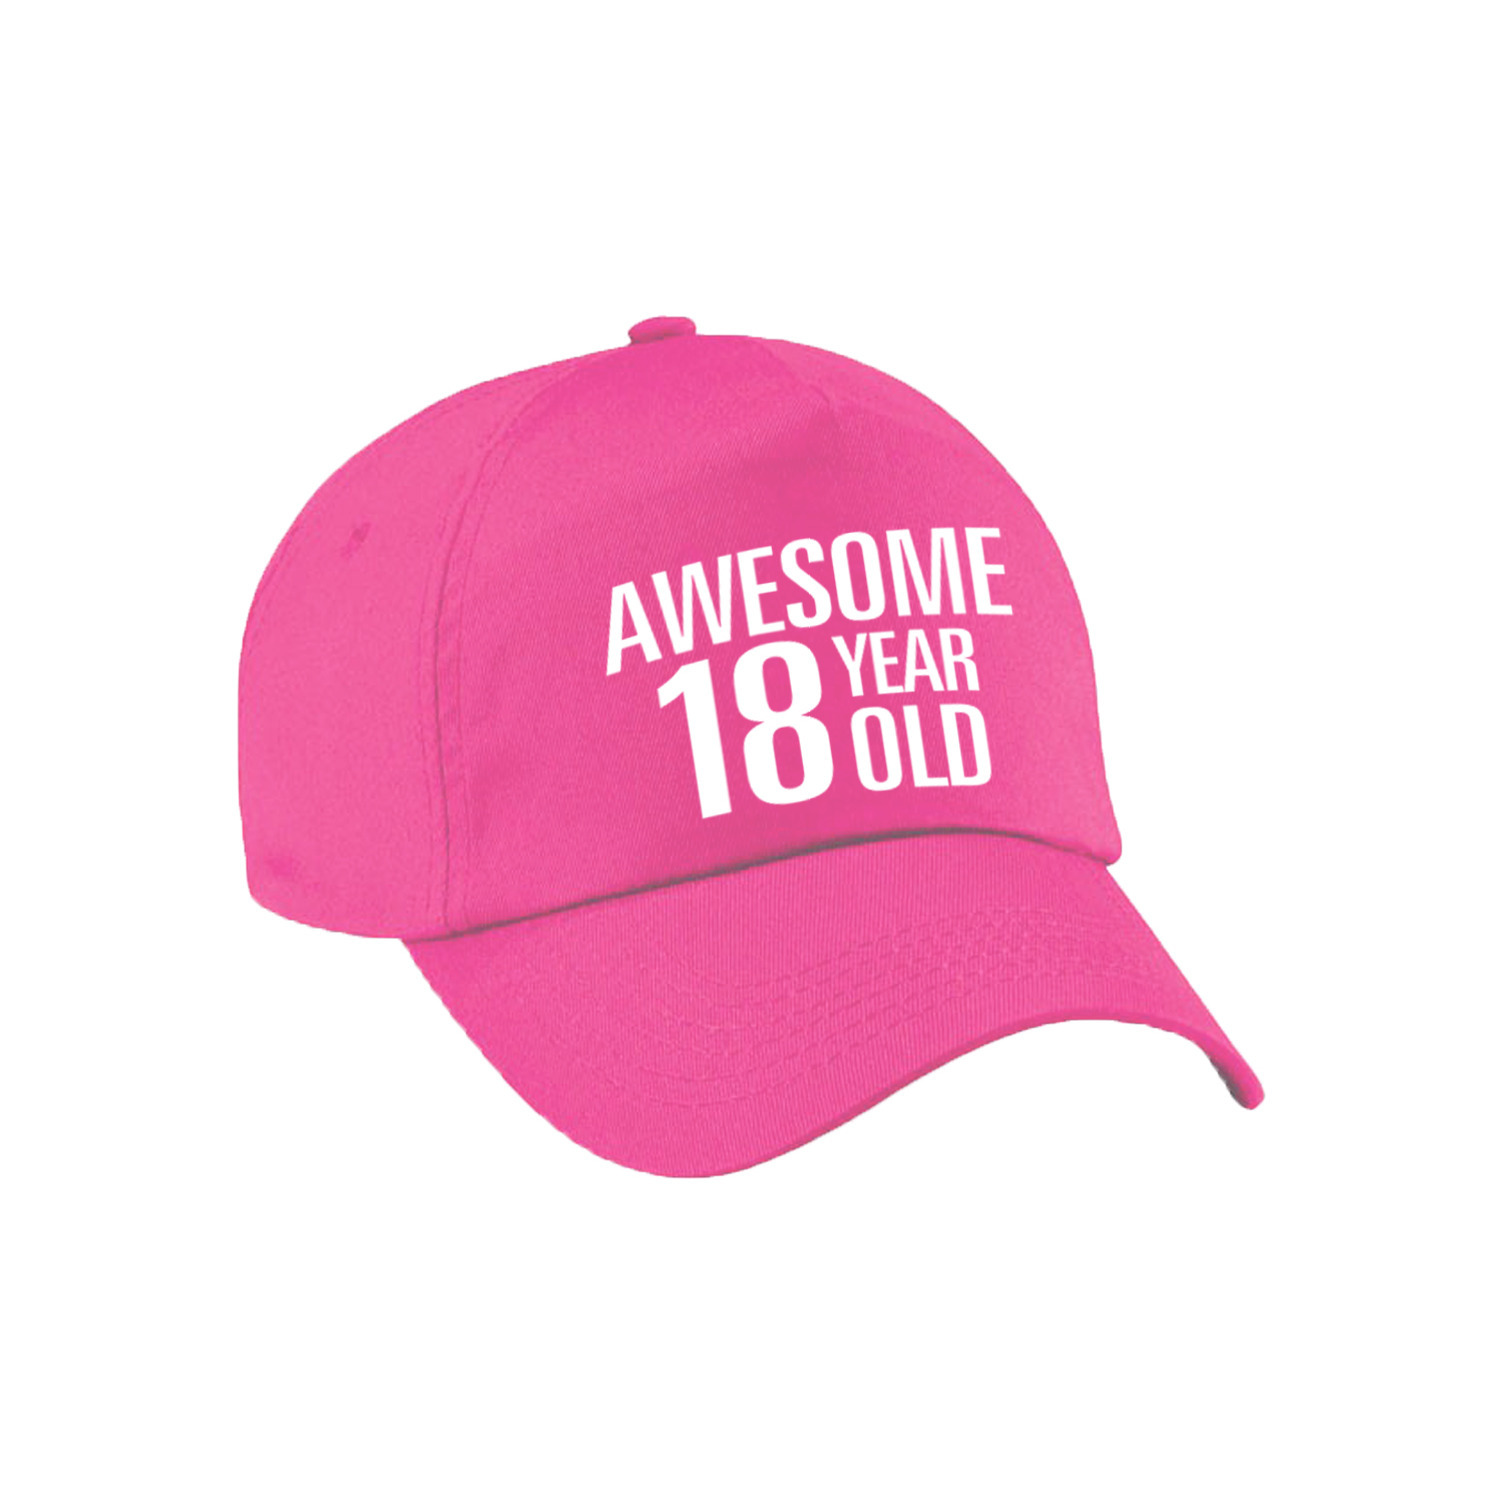 Awesome 18 year old verjaardag pet-cap roze voor dames en heren